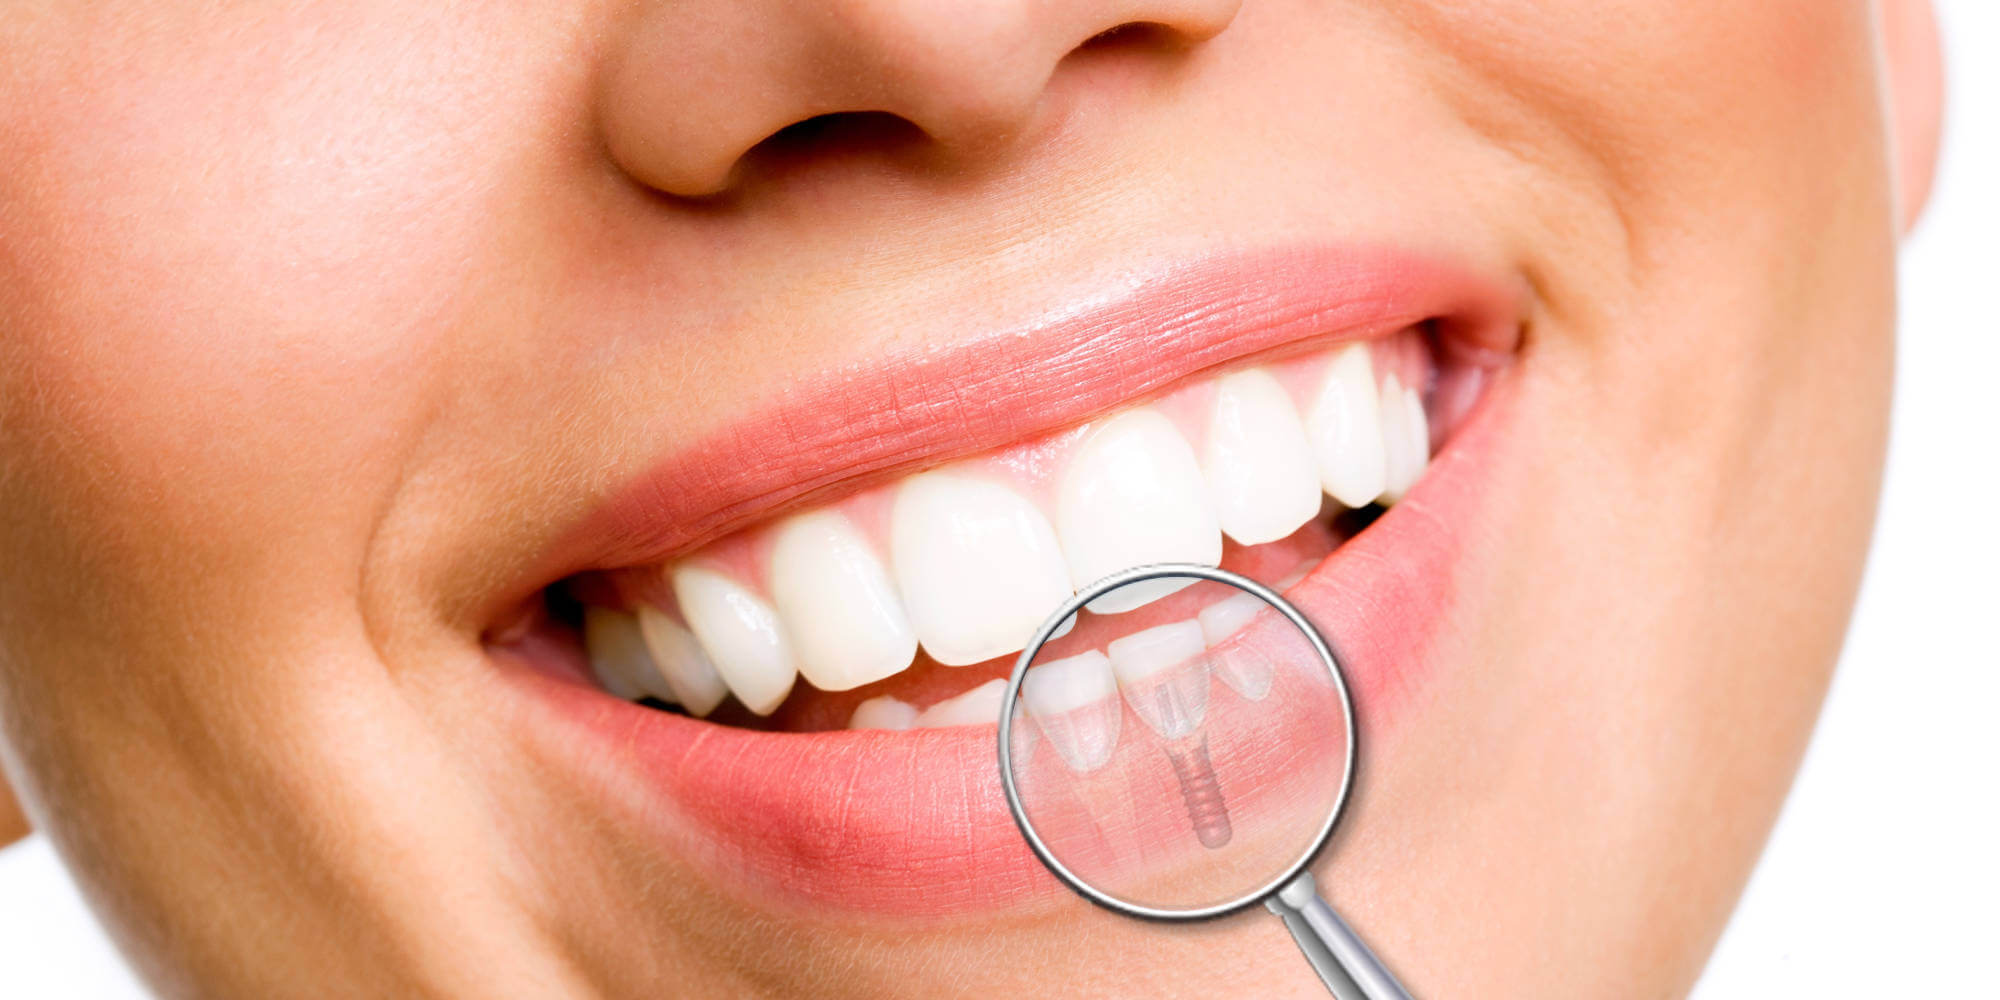 Labāko zobu implantācijas klīniku reitings Samarā 2020. gadam